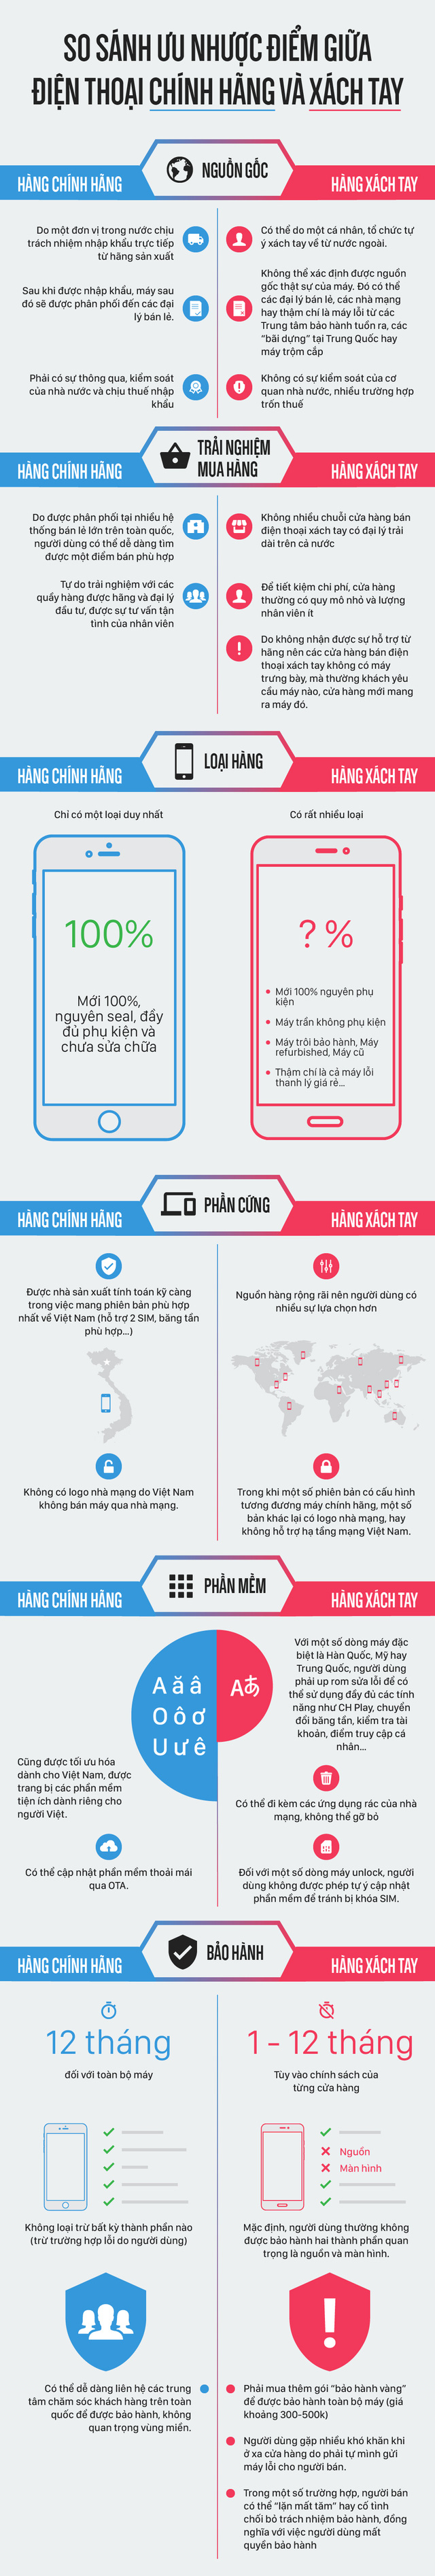 Xem Infographic này xong, chắc chắn chiếc smartphone tiếp theo của bạn sẽ là hàng chính hãng - Ảnh 1.